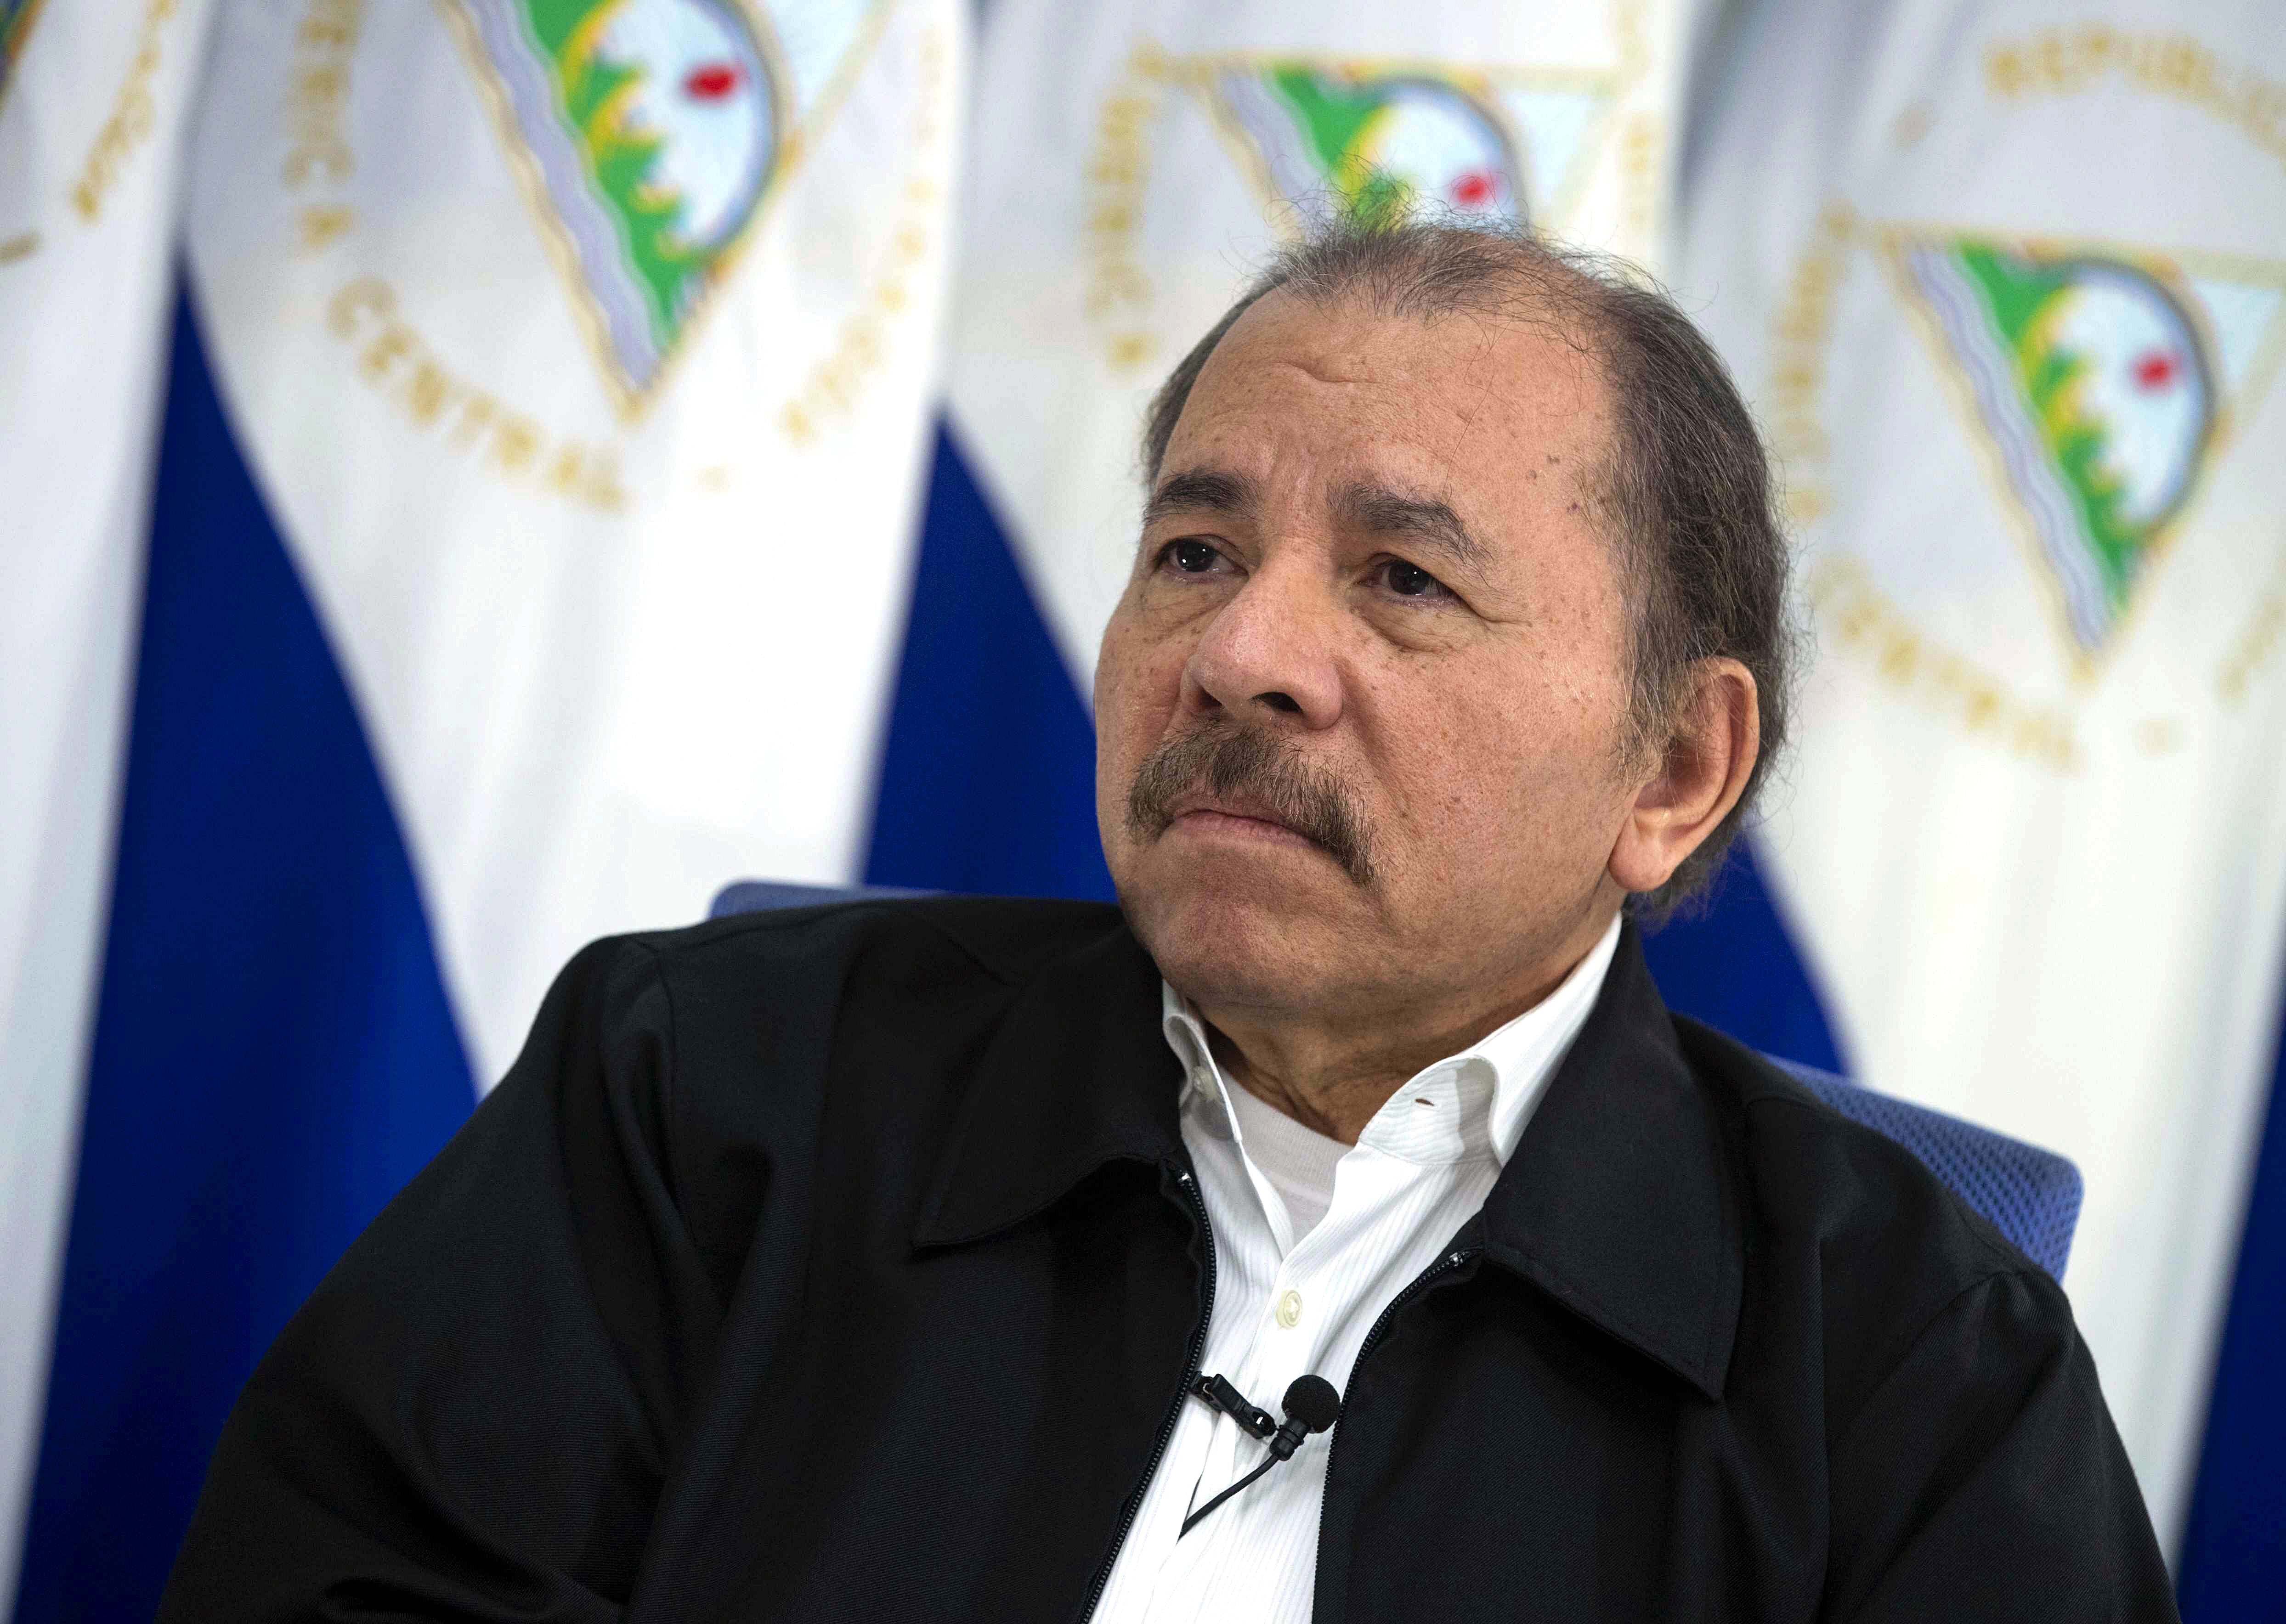 España concedió la nacionalidad a otros 15 opositores nicaragüenses expulsados por el régimen de Ortega